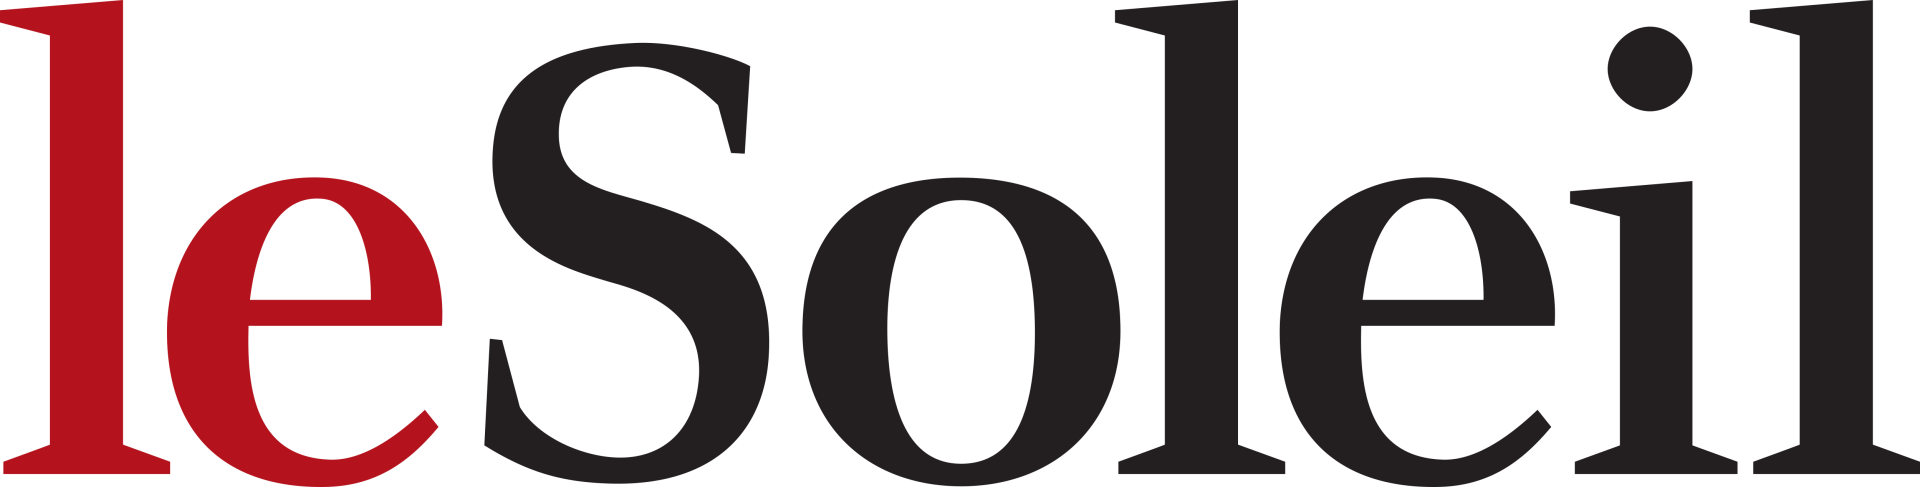 Le_Soleil_Logo